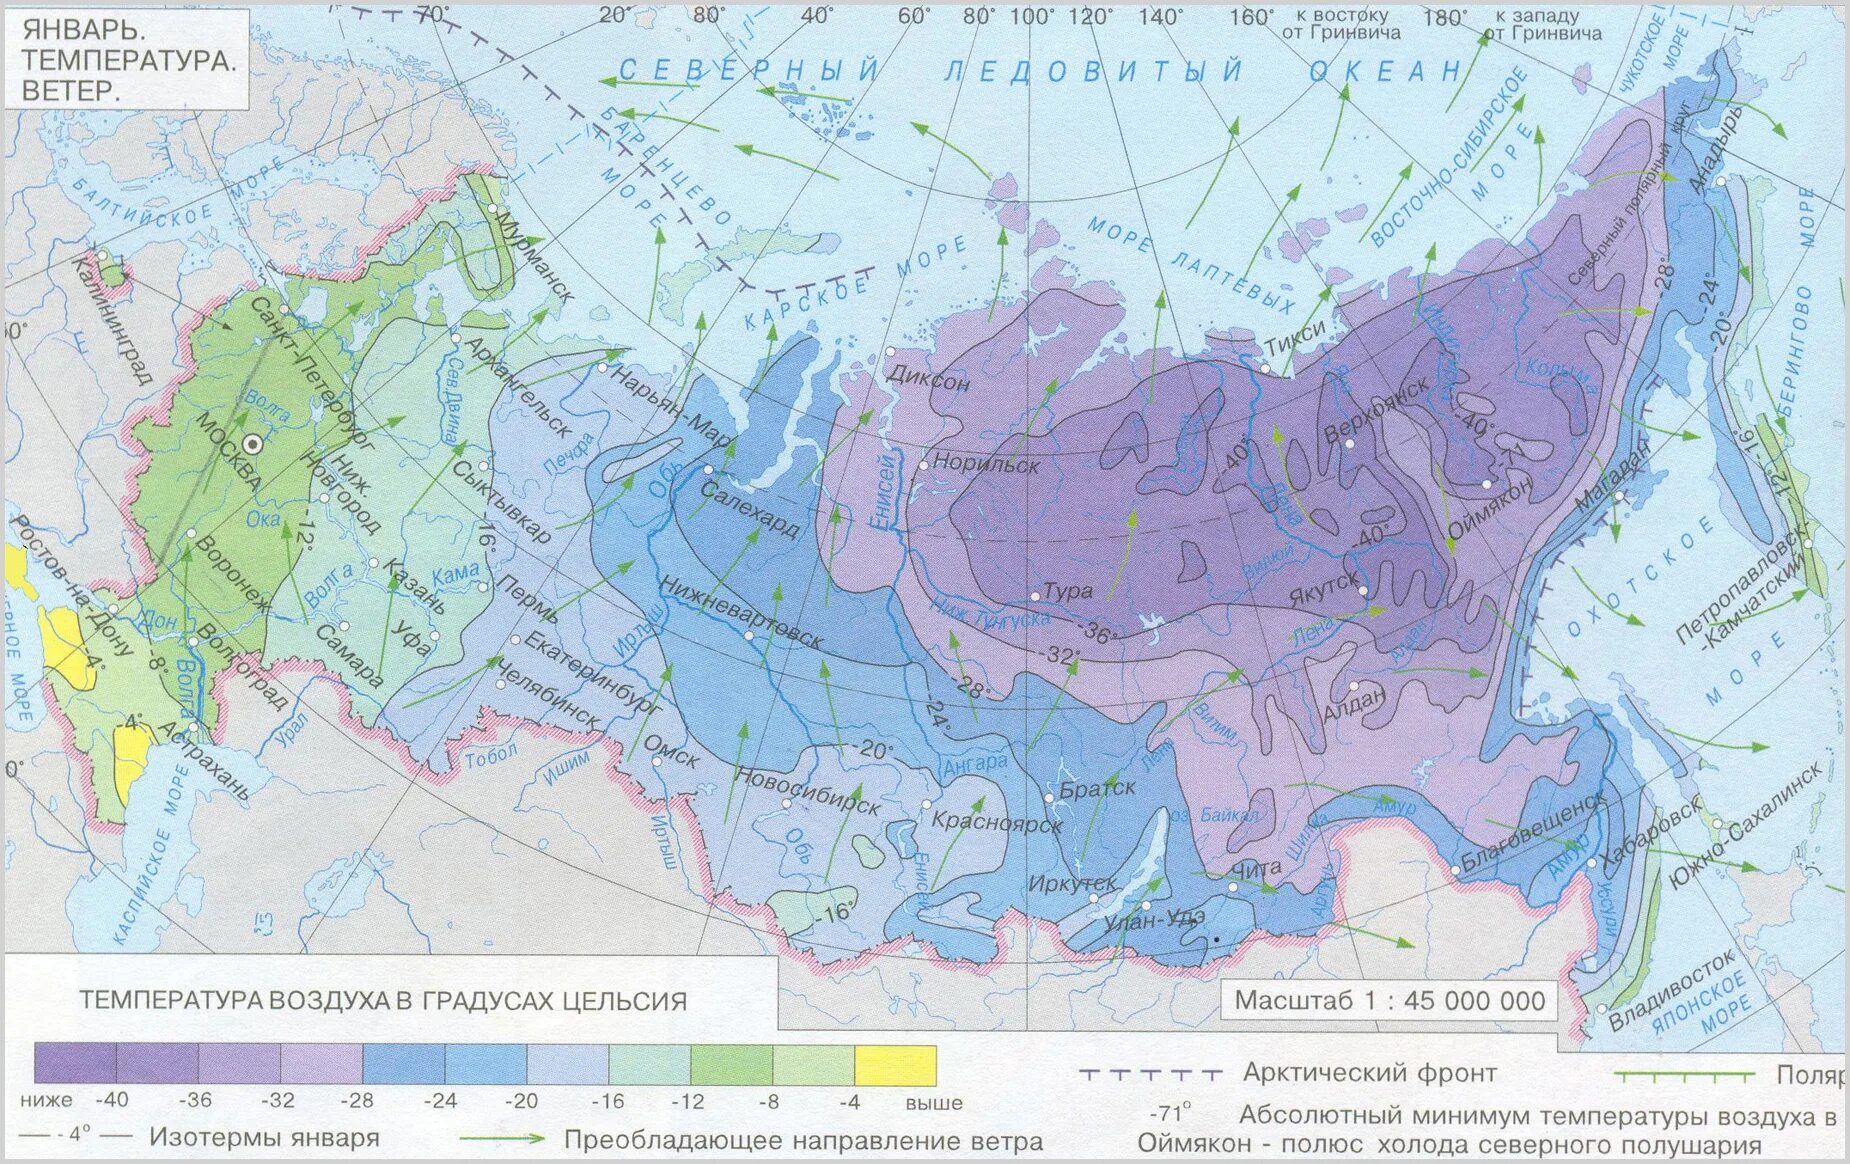 Температура в россии растет. Карта средних температур России в январе. Карта средней температуры России в январе. Средняя температура воздуха в январе карта России. Карта средних температур января и июля в России.